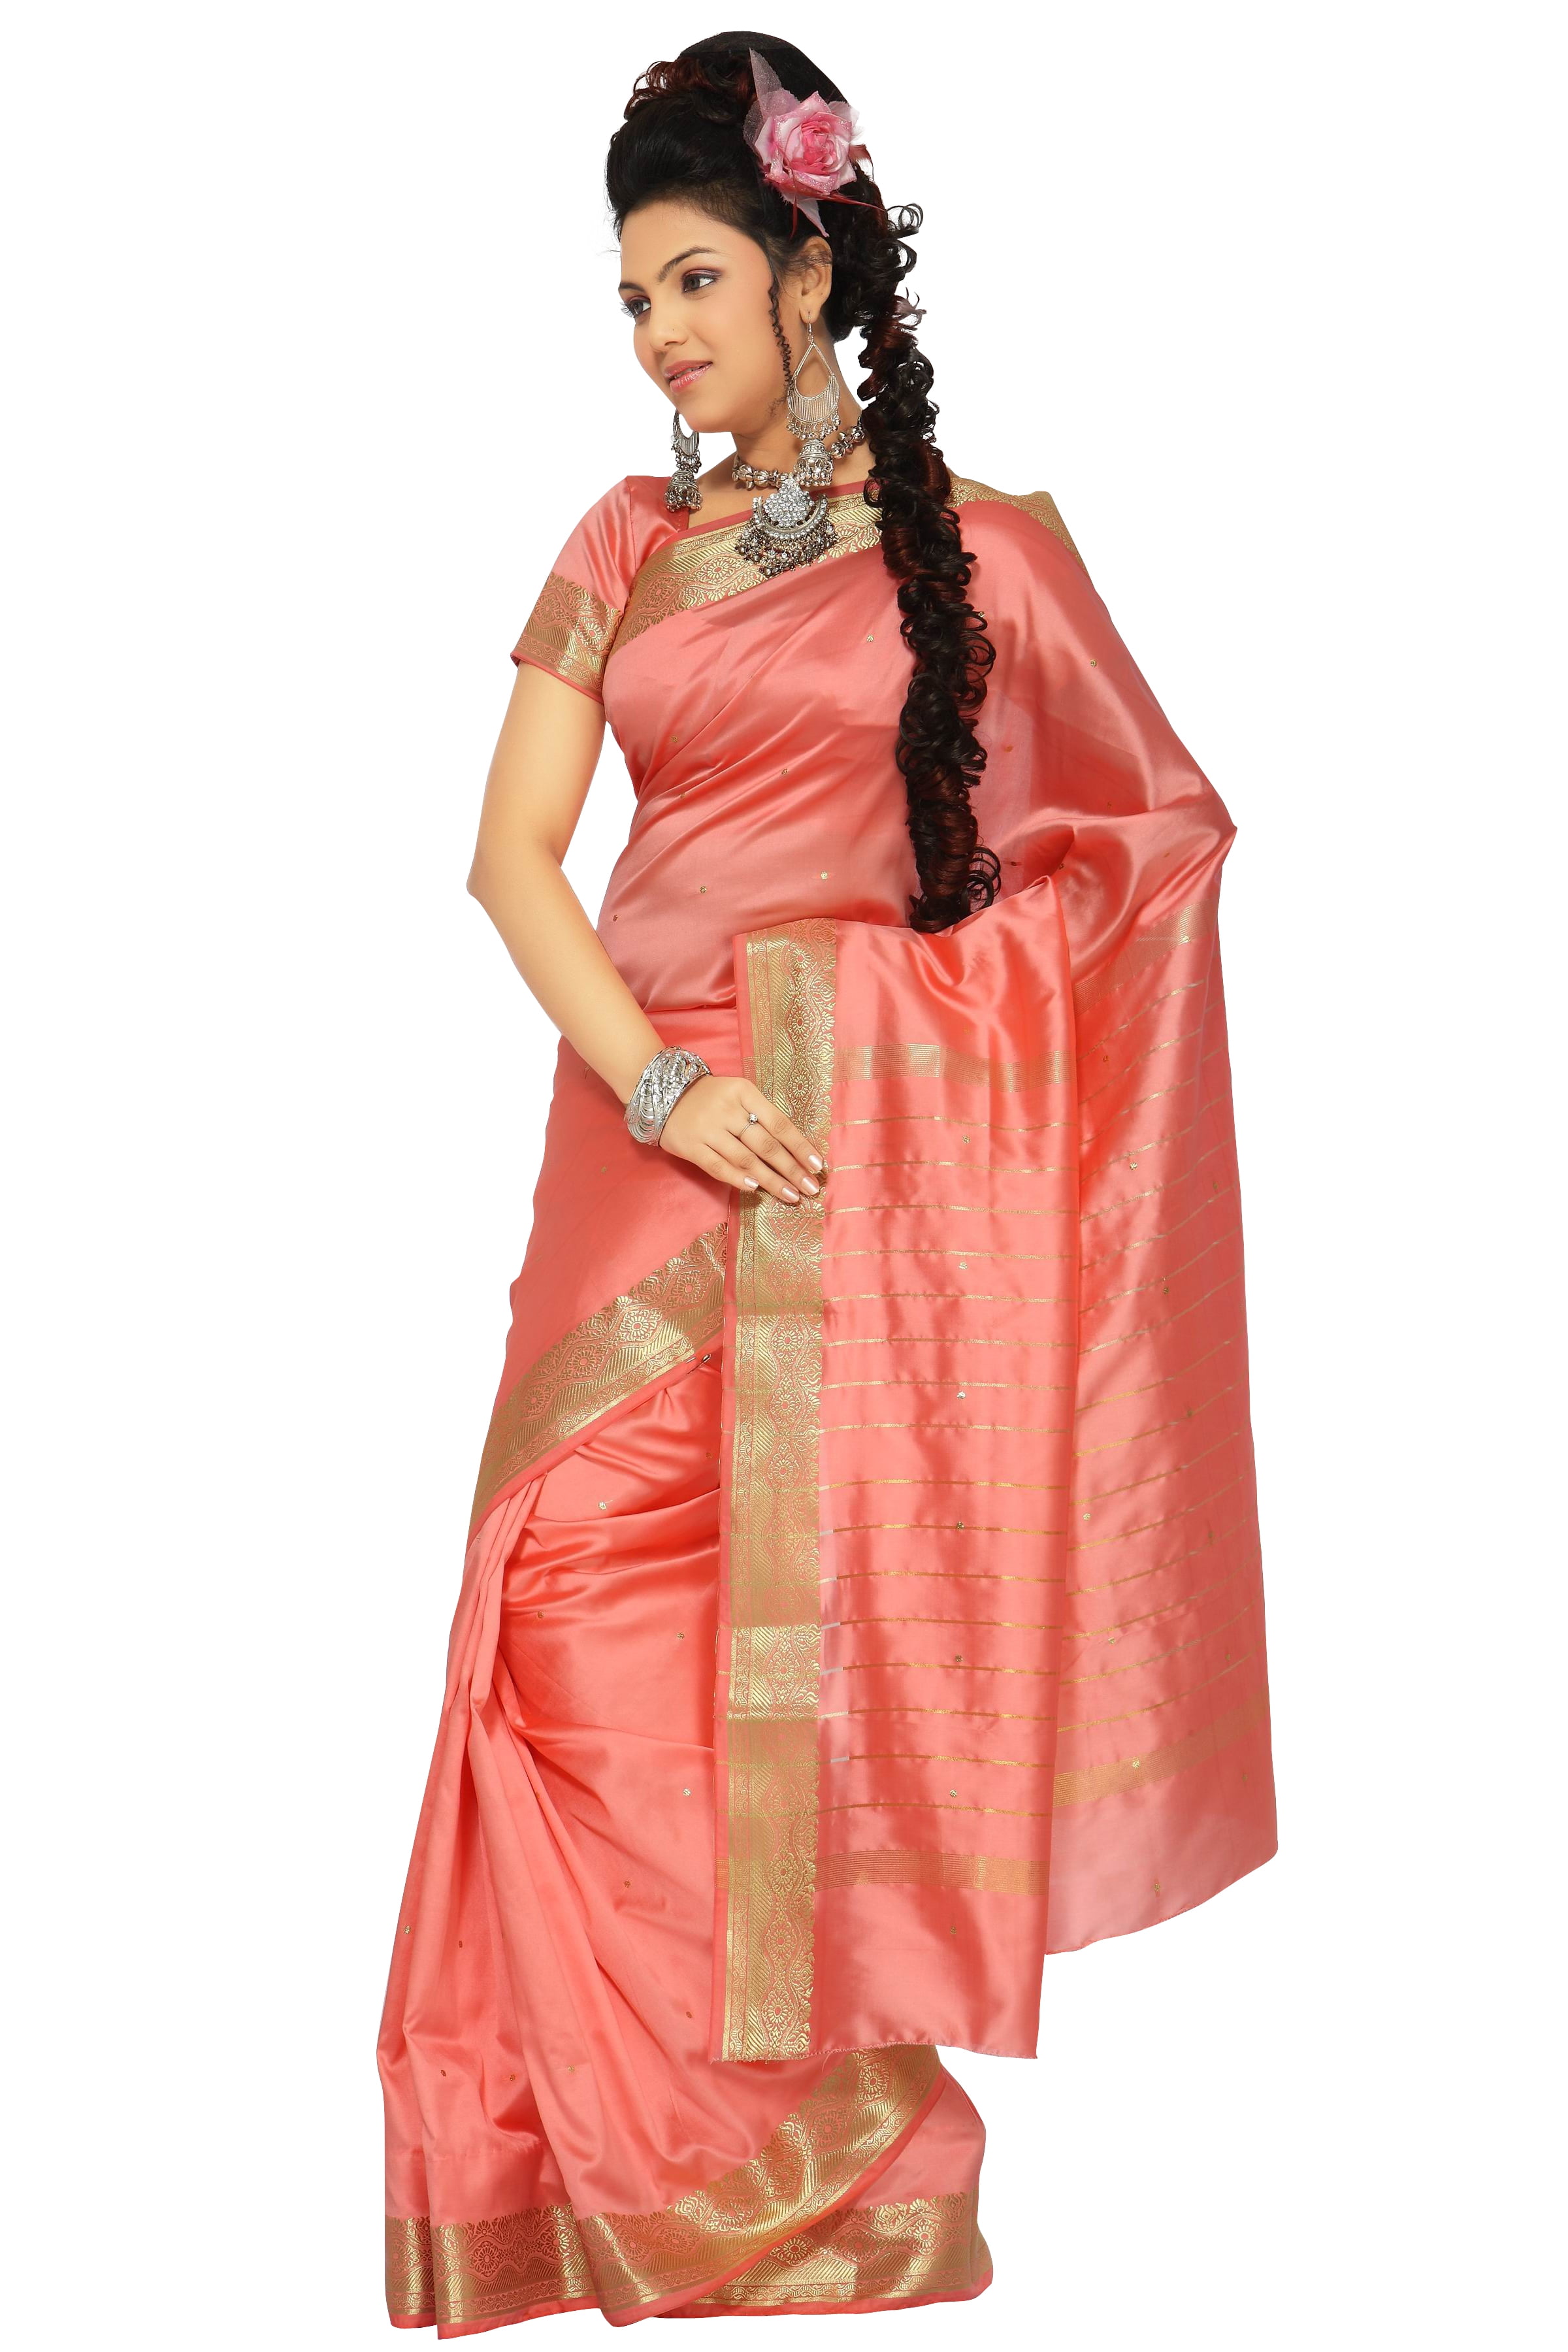  Indian Selections - Rust Art Silk Saree Sari Fabric